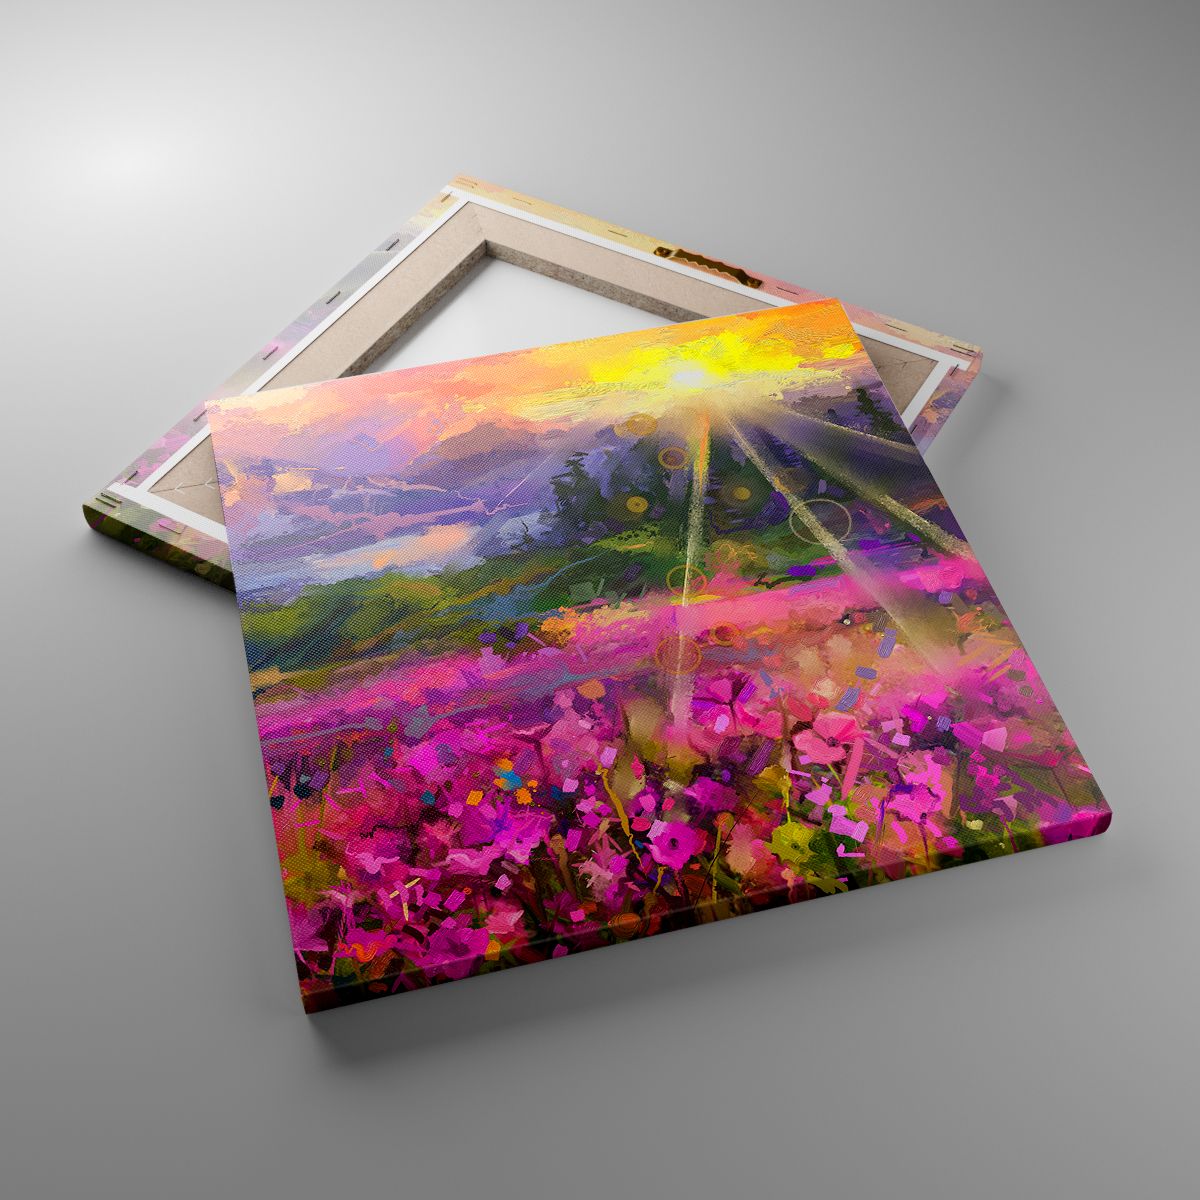 Leinwandbild Abstraktion, Leinwandbild Landschaft, Leinwandbild Blumen, Leinwandbild Berge, Leinwandbild Kunst